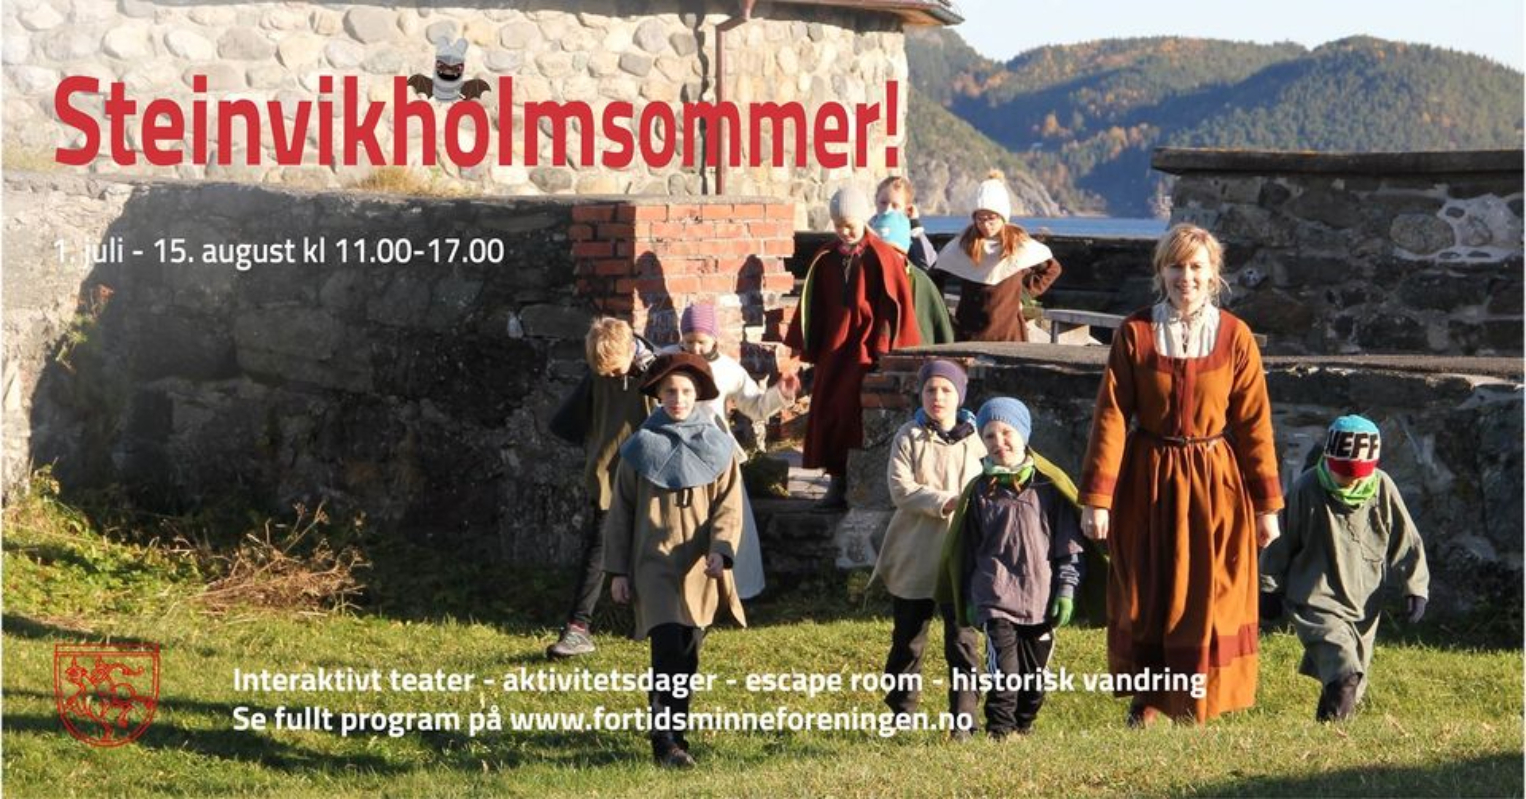 Velkommen til en spennende sommer på Steinvikholm slott!